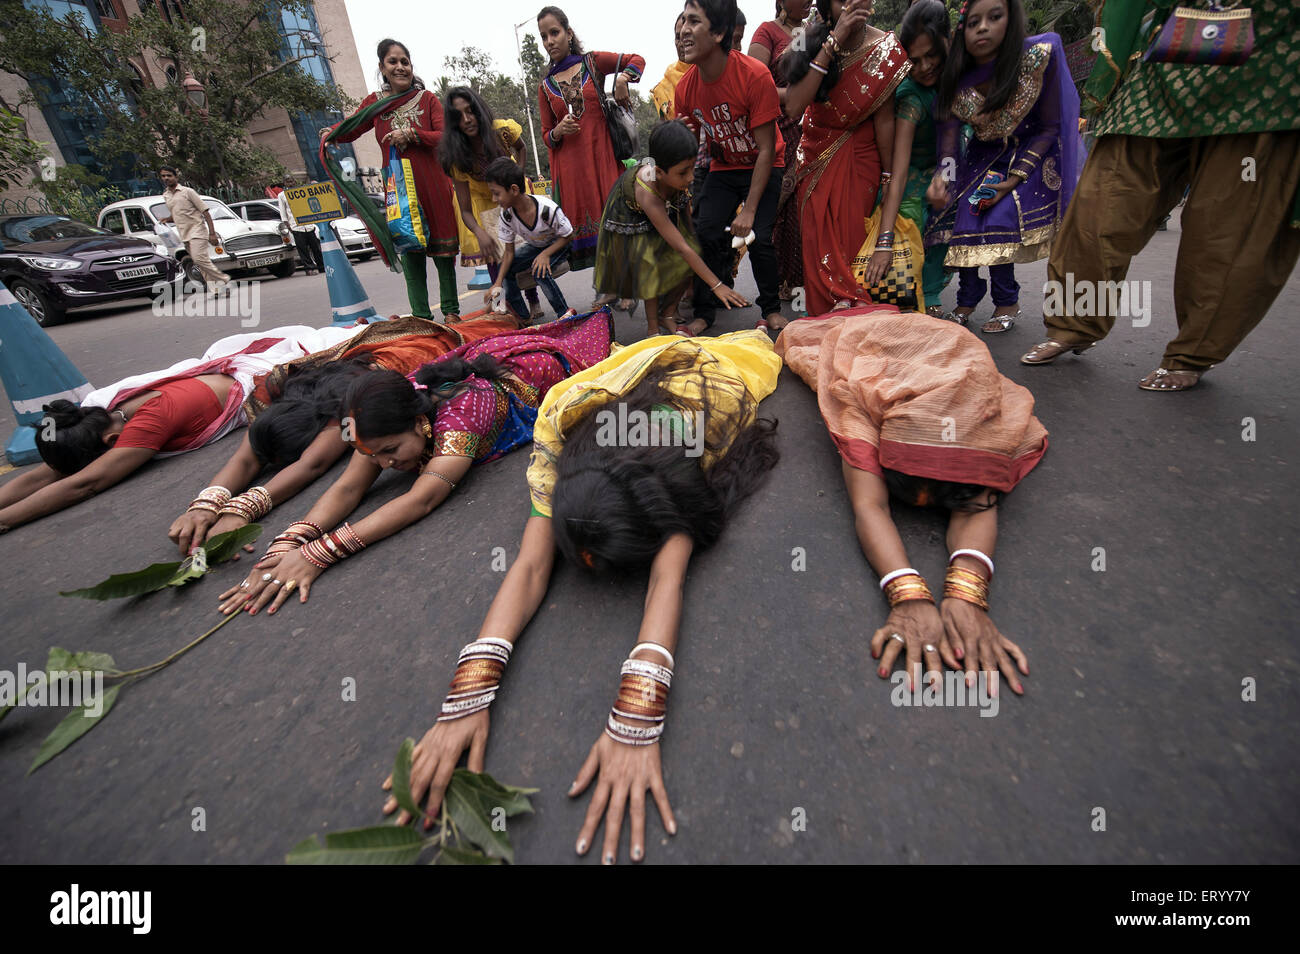 Femme couchée sur la route culte Chhat Babughat kolkata Inde Asie Banque D'Images